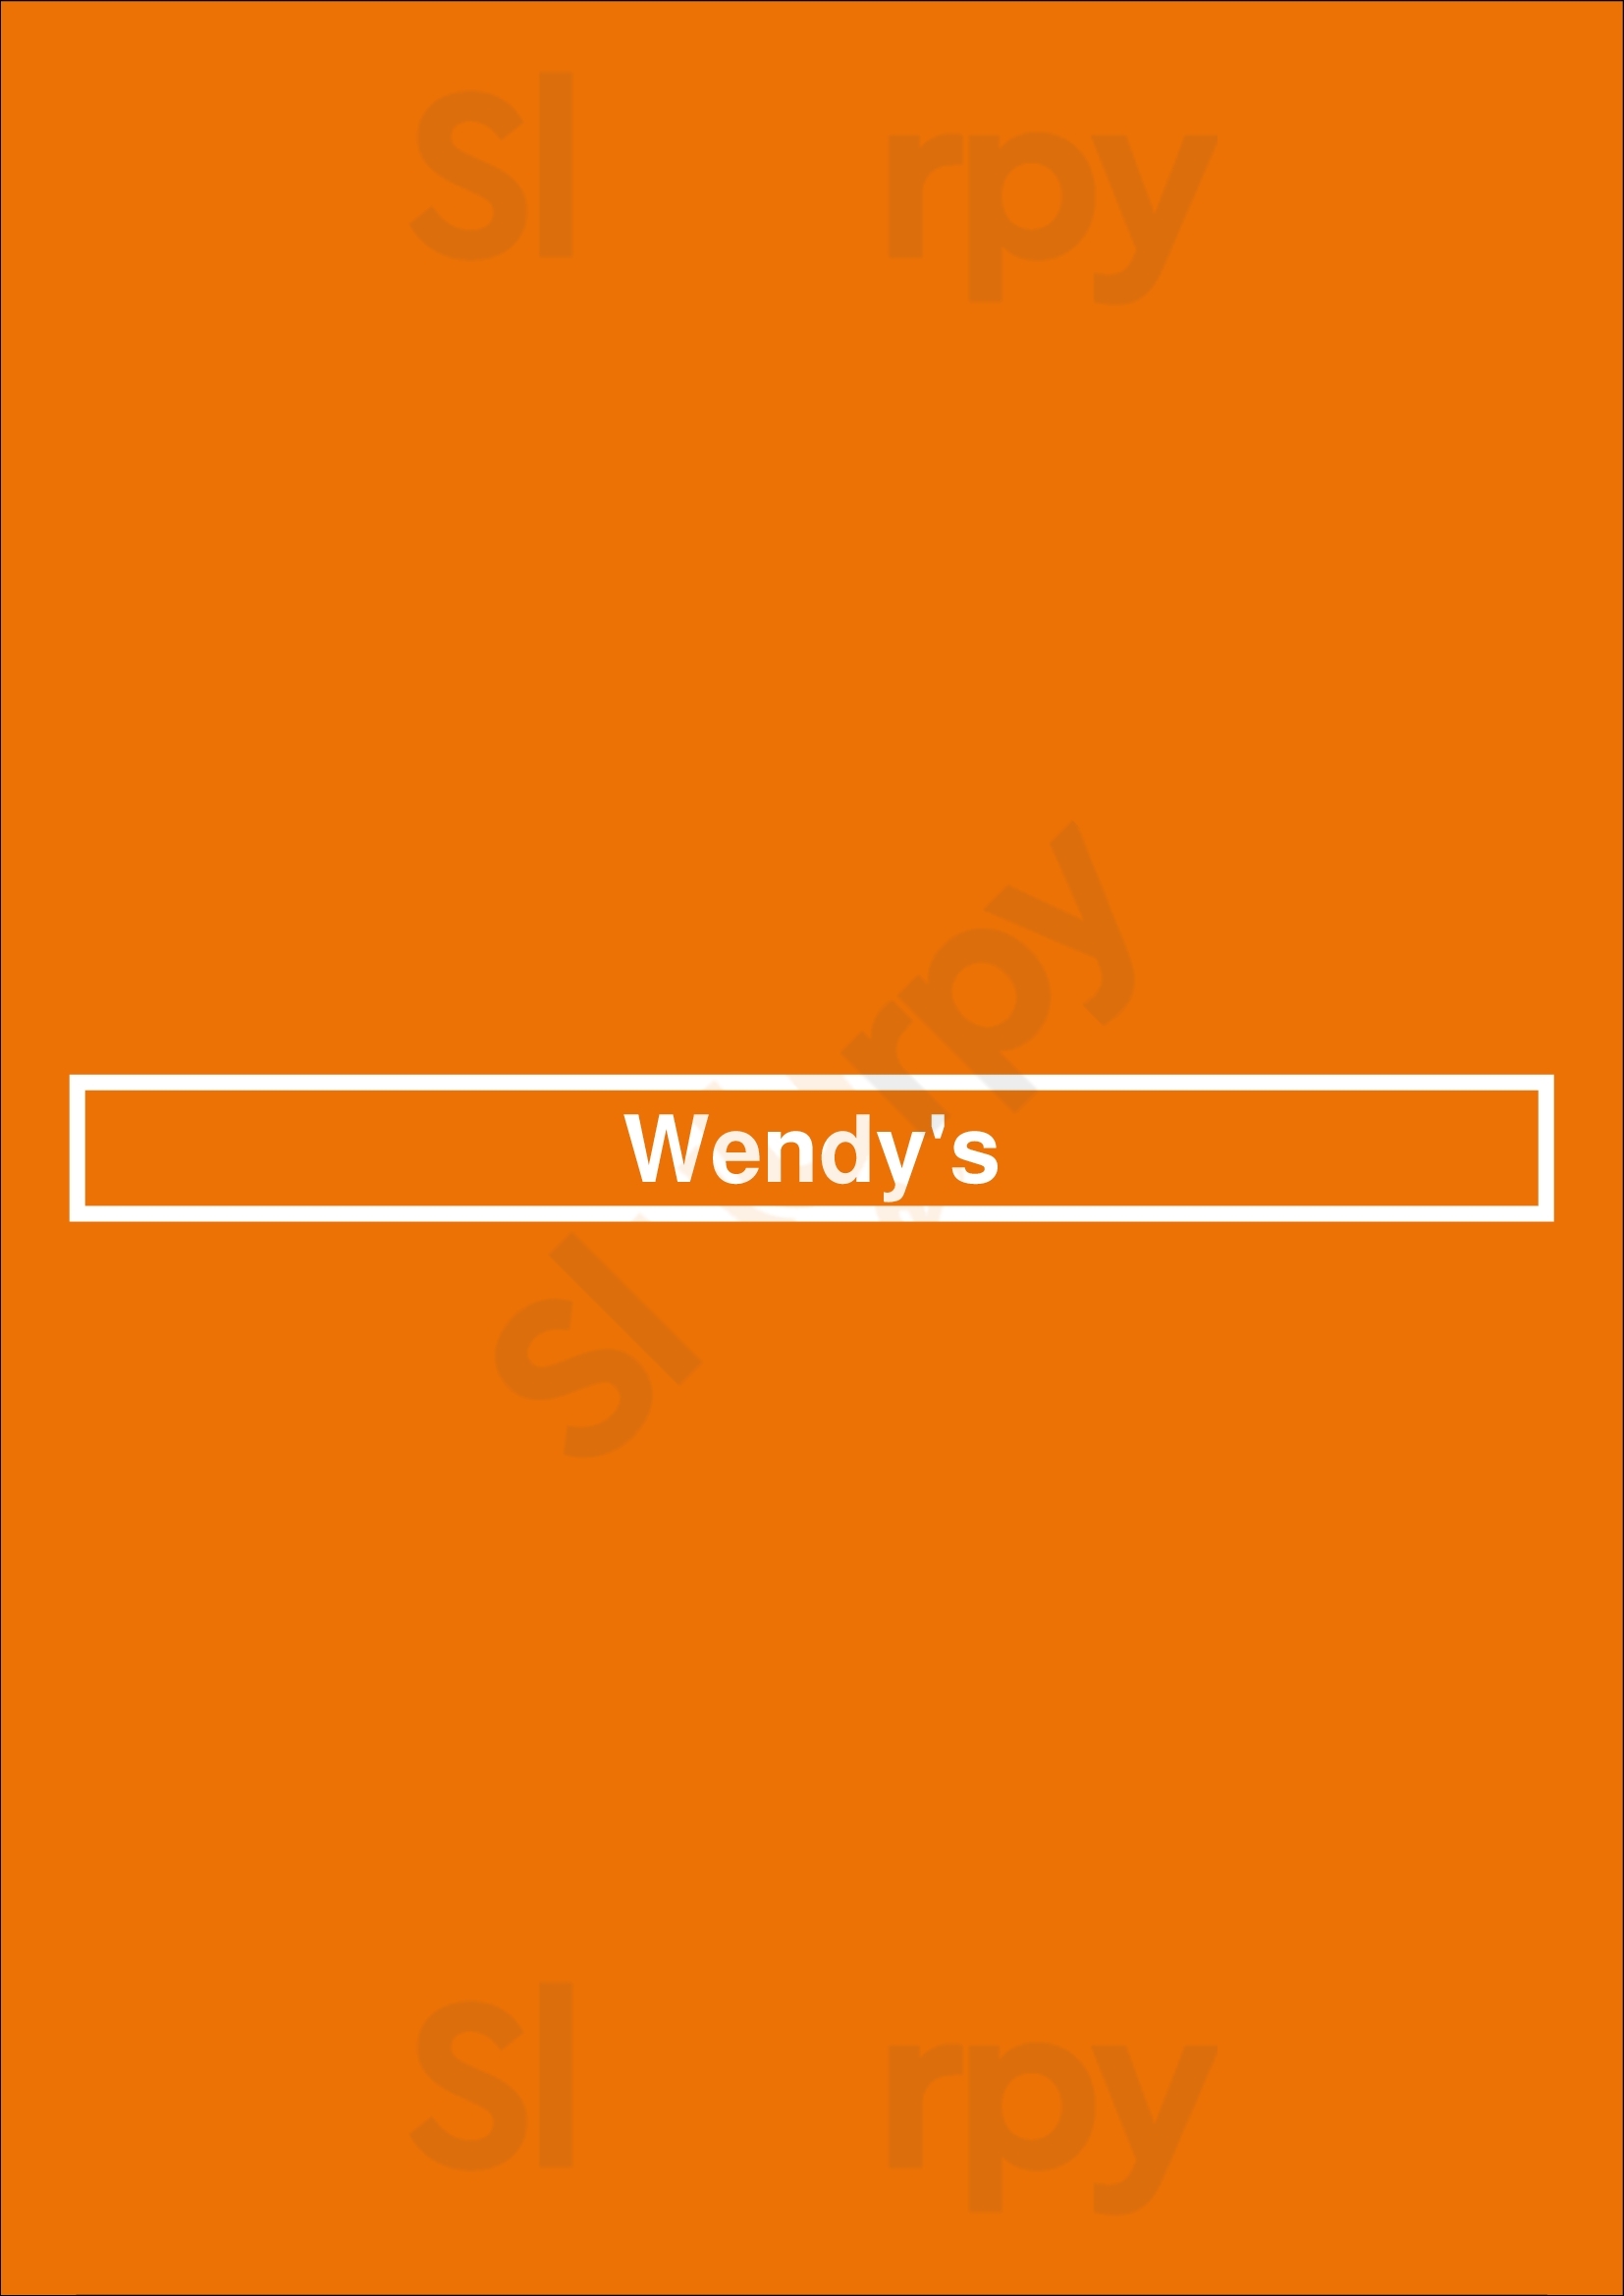 Wendy's Chicago Menu - 1